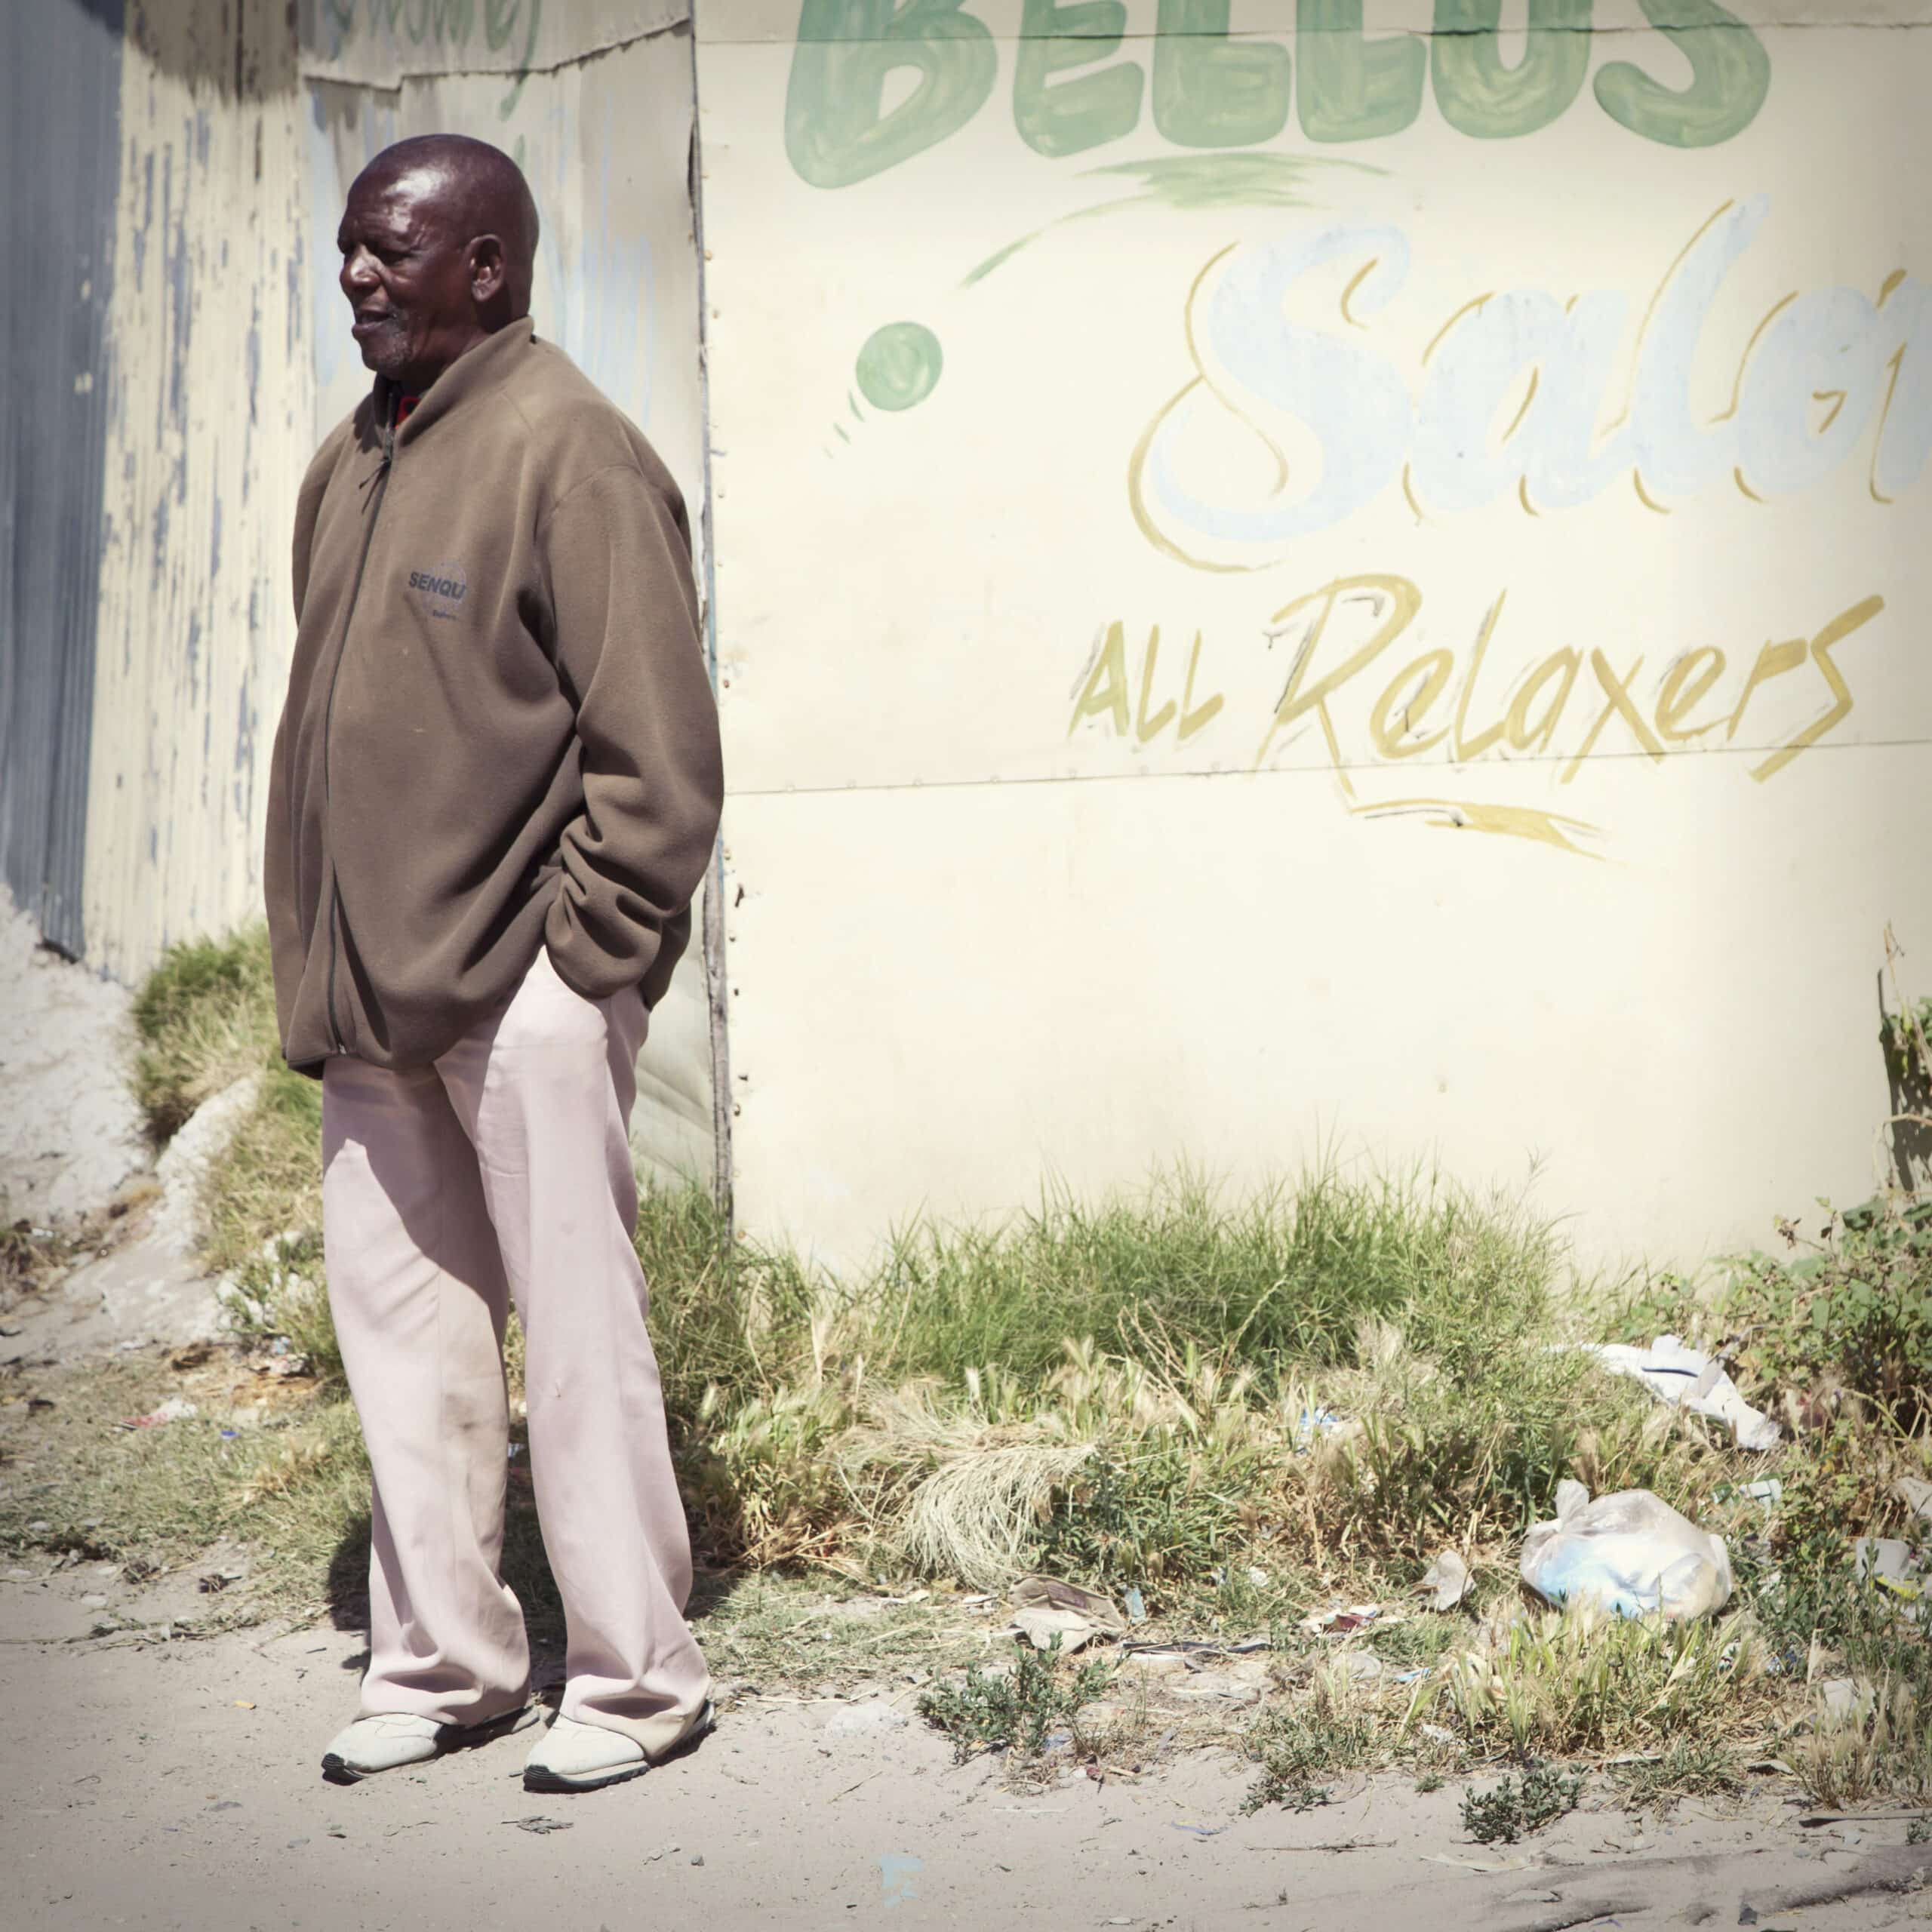 An einer verblassten Wand mit dem Graffiti „Bellus Salon & Relaxers“ steht ein älterer Mann, bekleidet mit einer braunen Jacke und hellrosa Hosen, und blickt nachdenklich zur Seite. © Fotografie Tomas Rodriguez